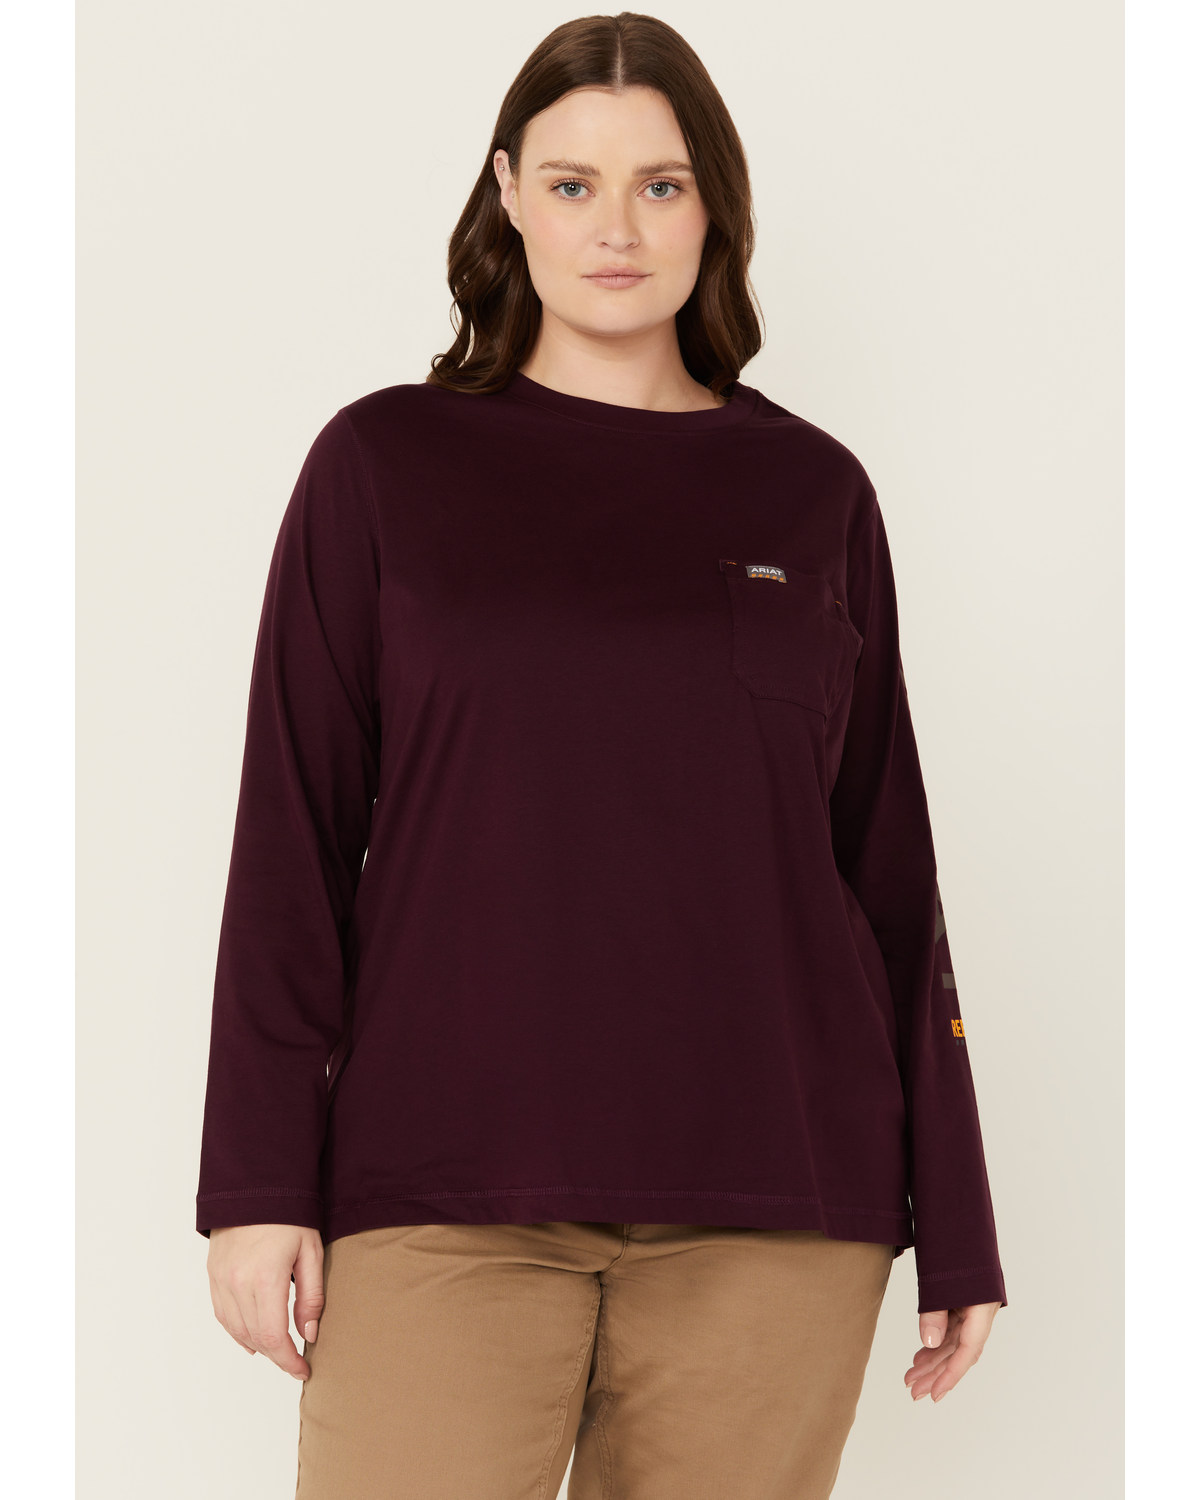 Ariat Women's Rebar Solid Long Sleeve Shirt